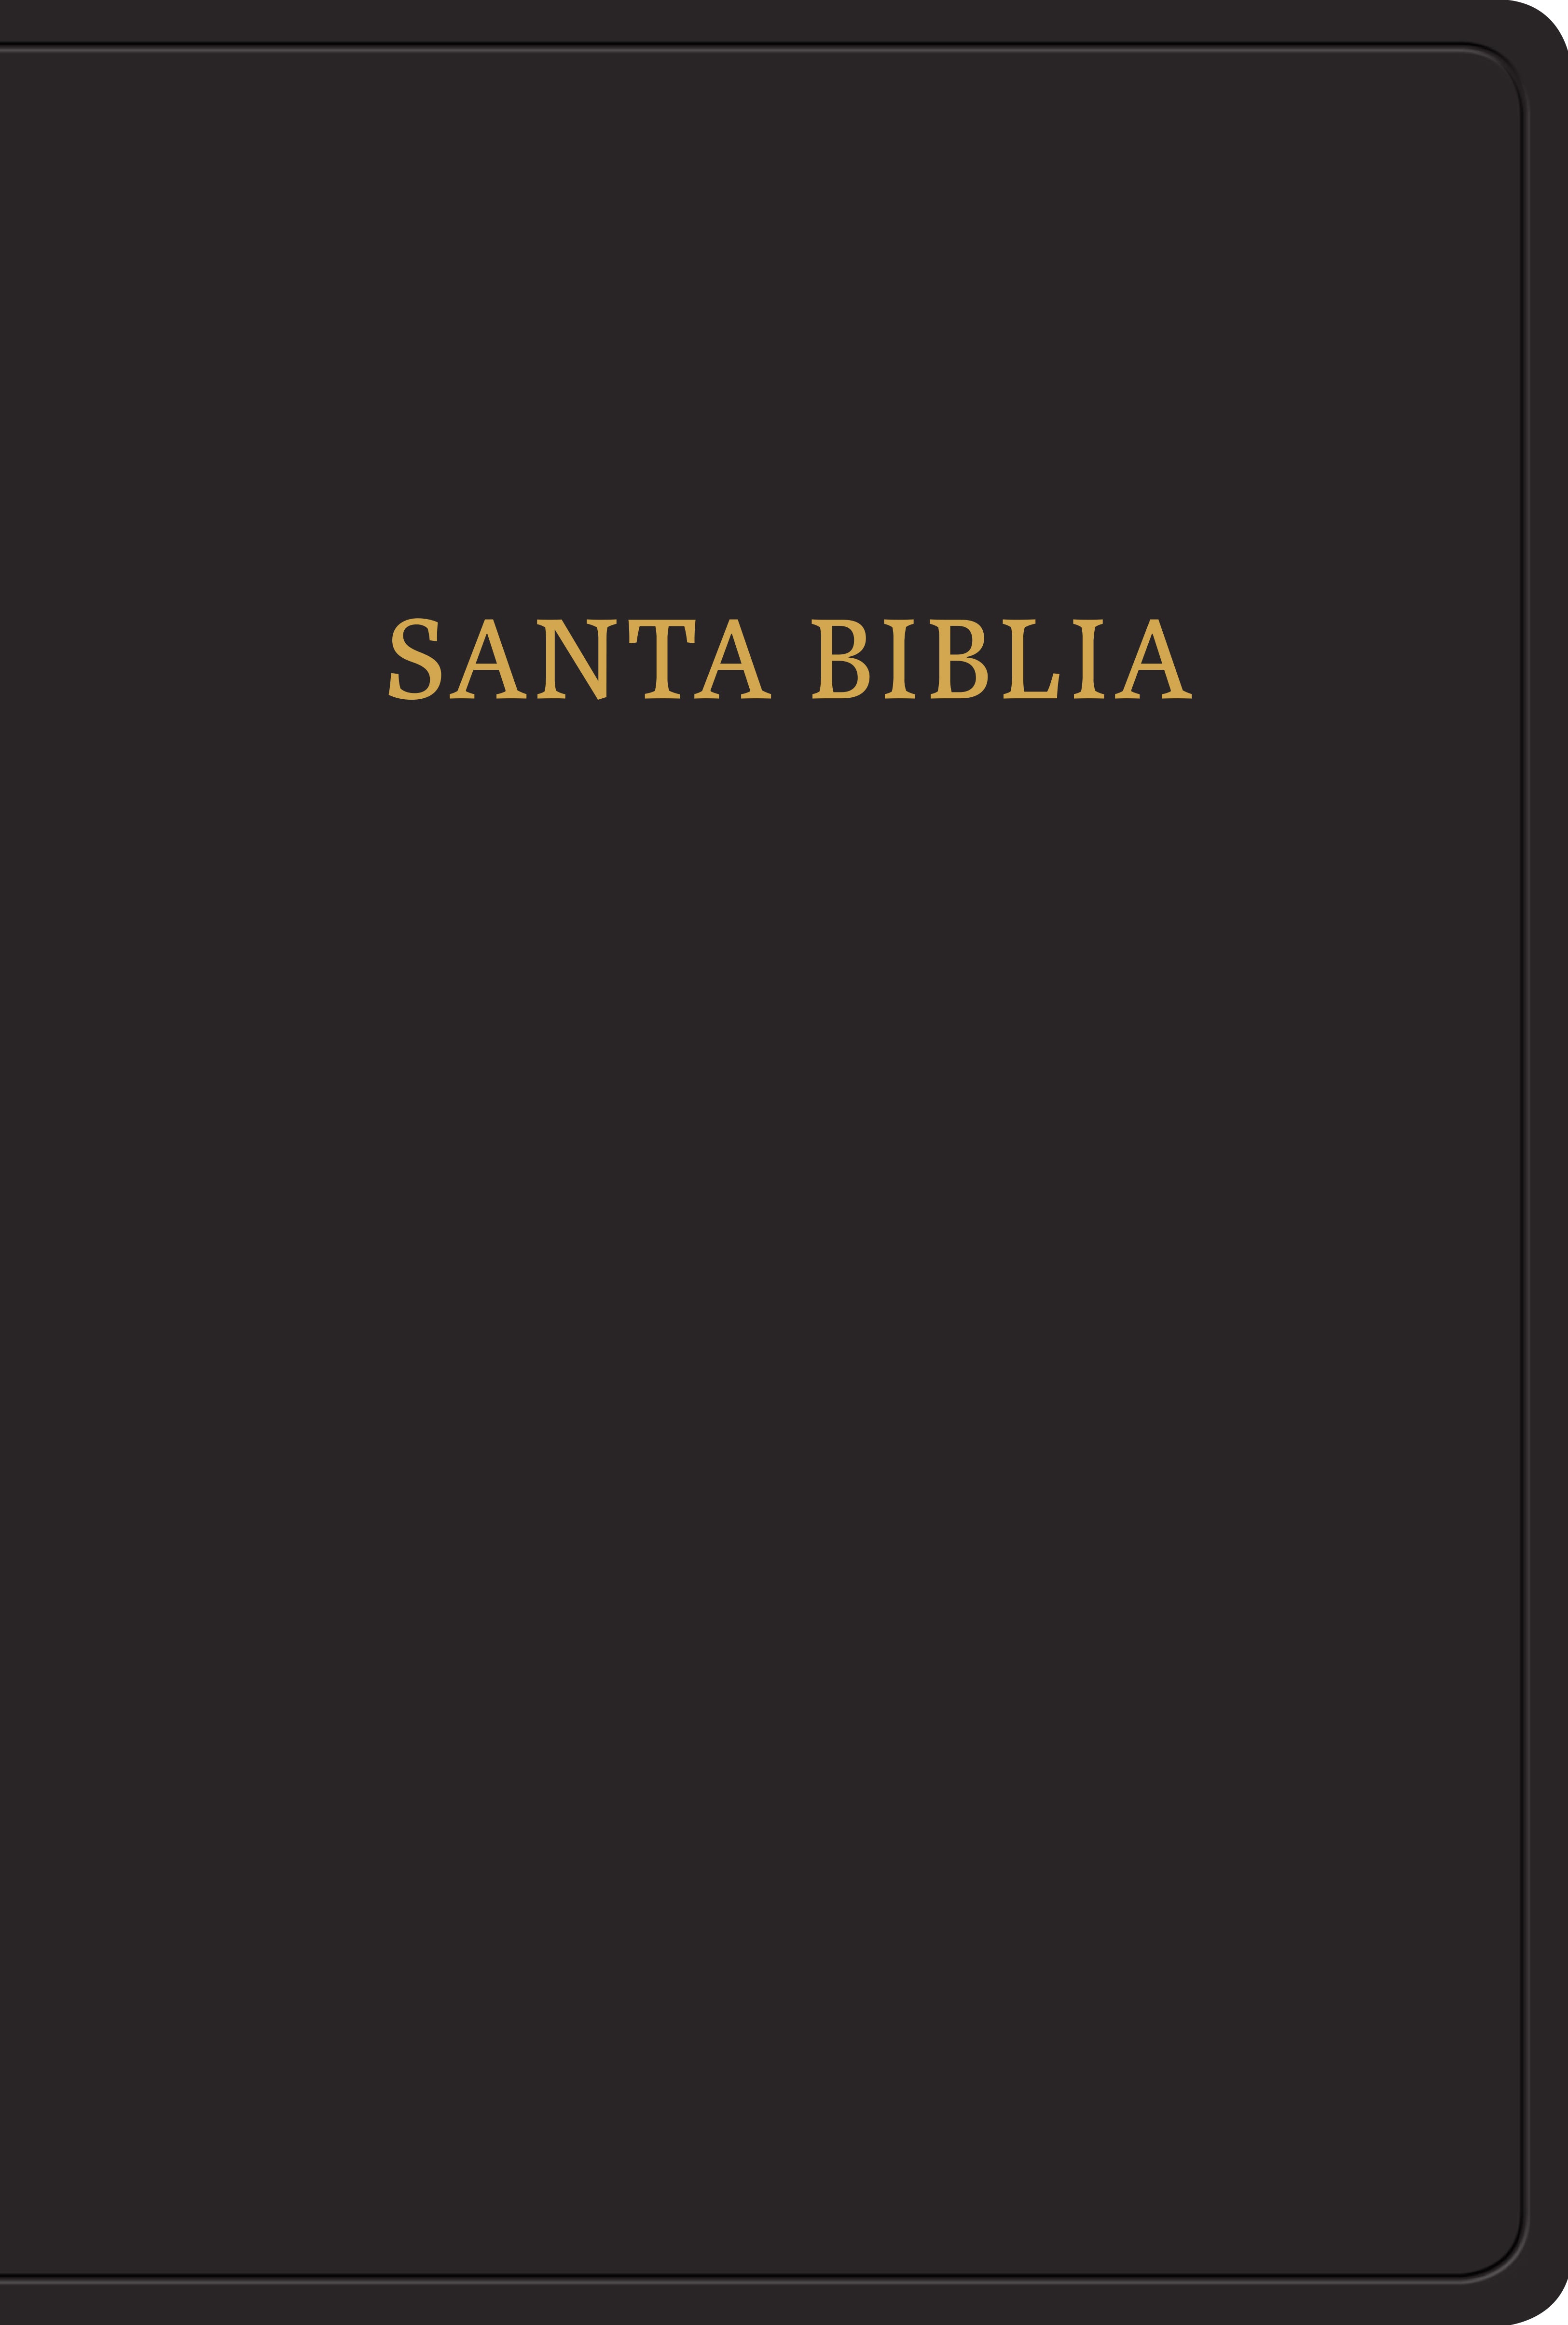 Image of RVR 1960 Biblia letra gigante, negro imitación piel con índice other